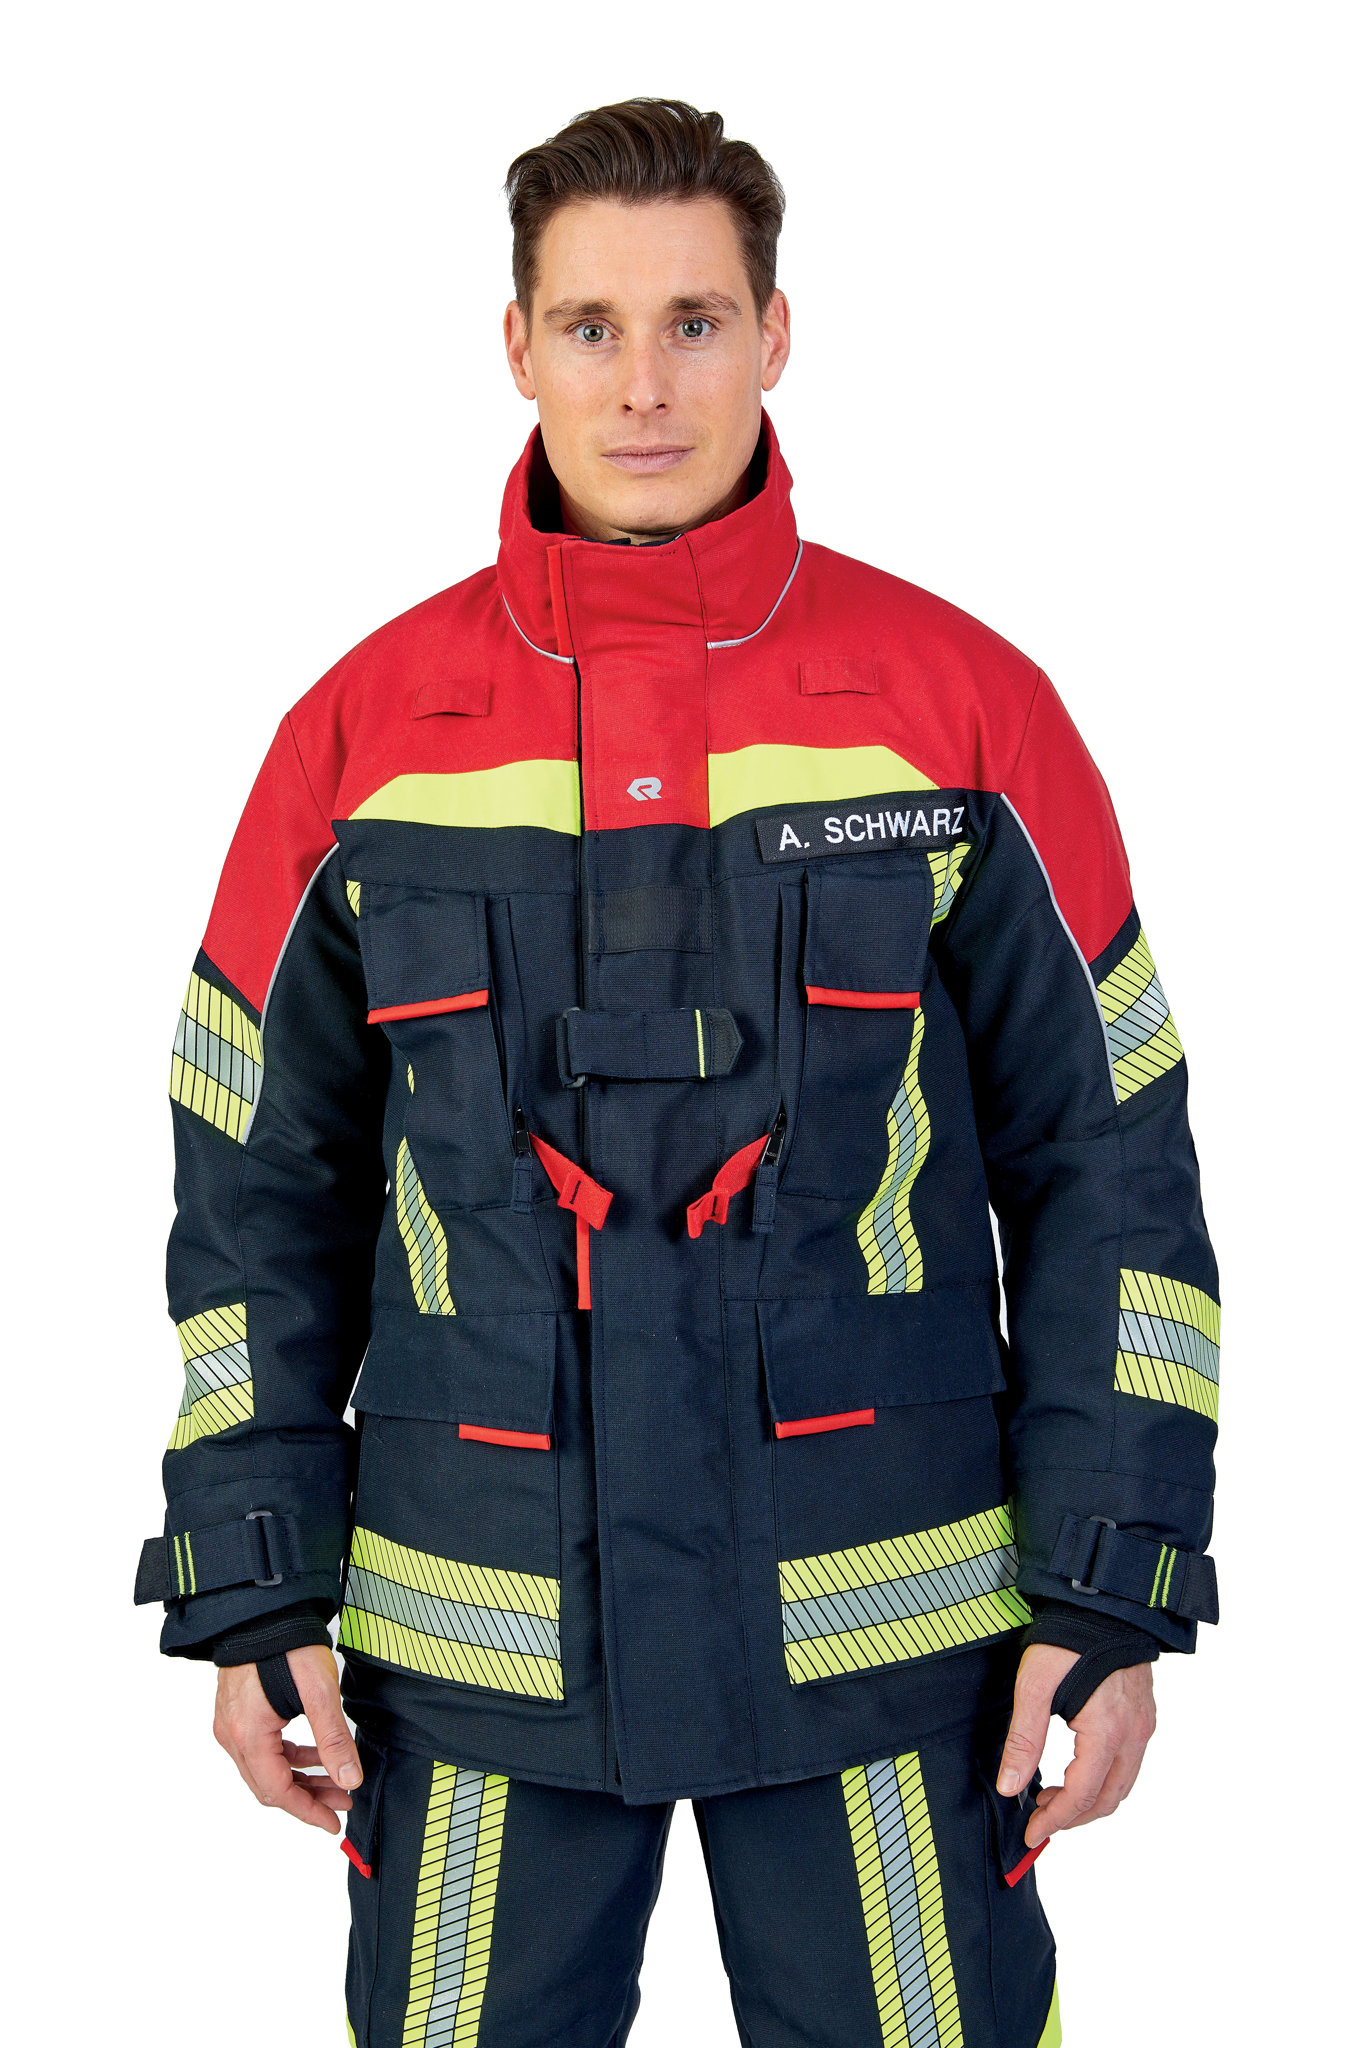 Bild von ROSENBAUER Feuerwehreinsatzjacke FIRE FLEX, NOMEX NXT, schwarzblau/rot, Gr. 68-70 E